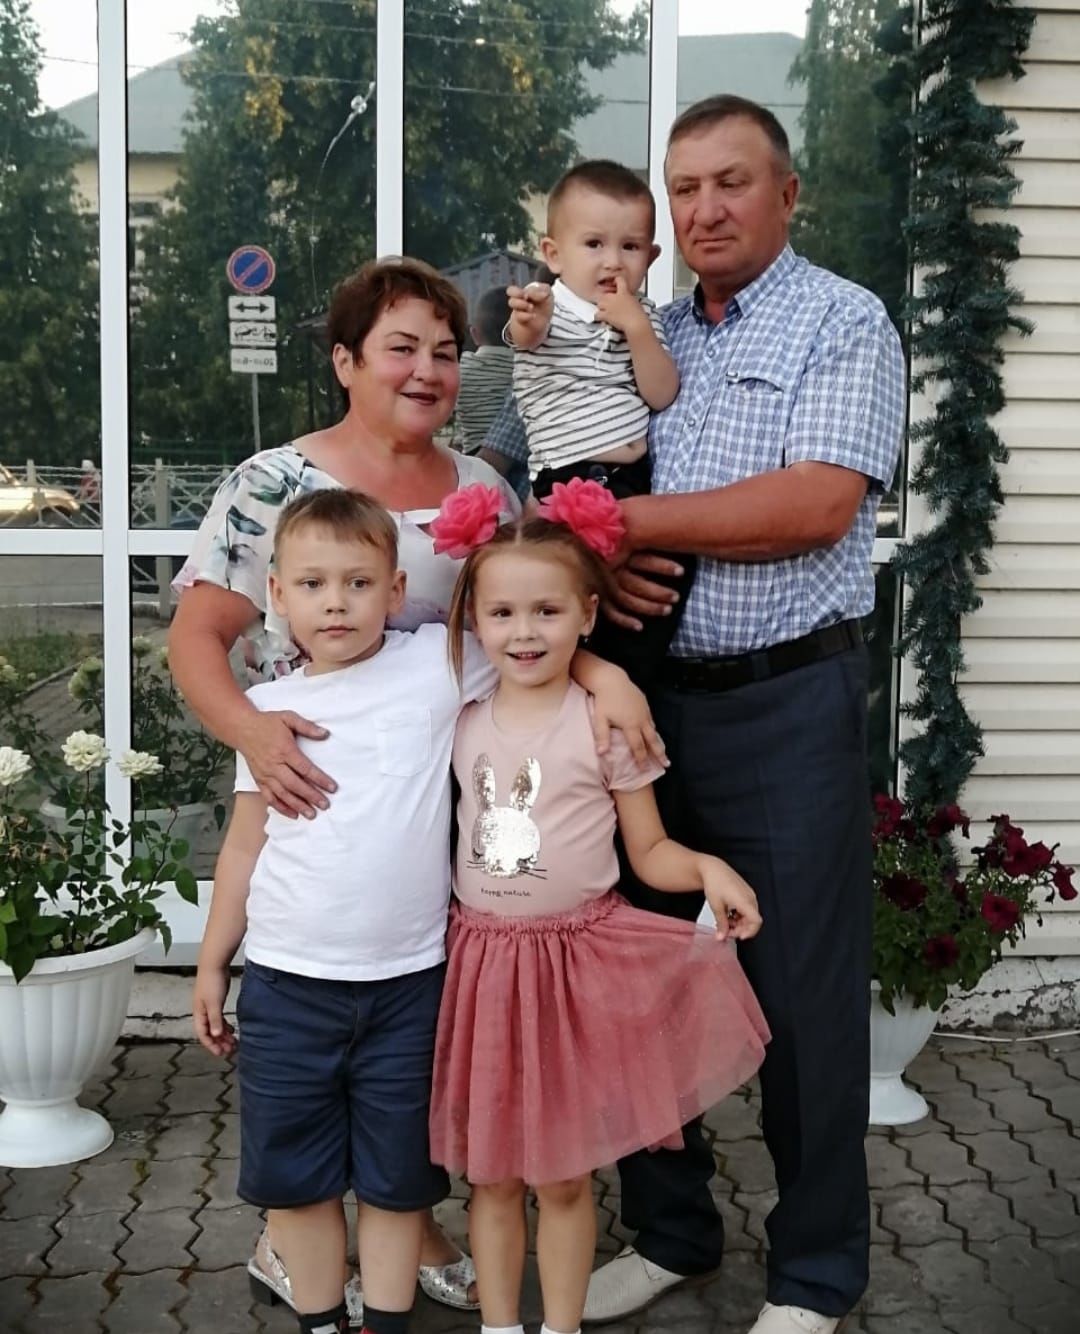 Фанзия Галляметдинова: "Радость жизни – в семье"